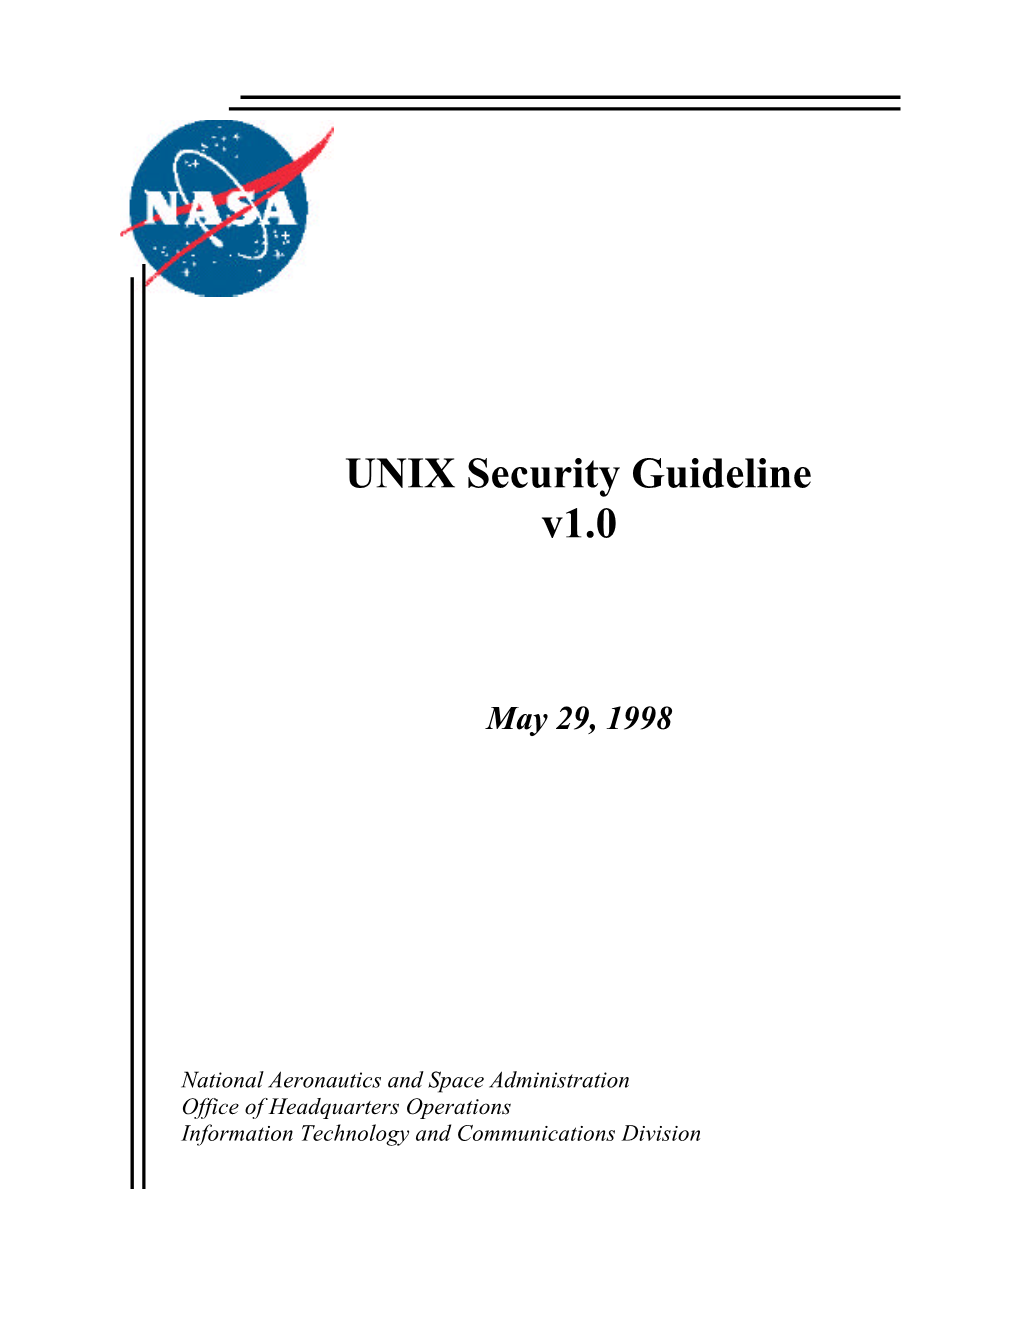 UNIX Security Guideline V1.0